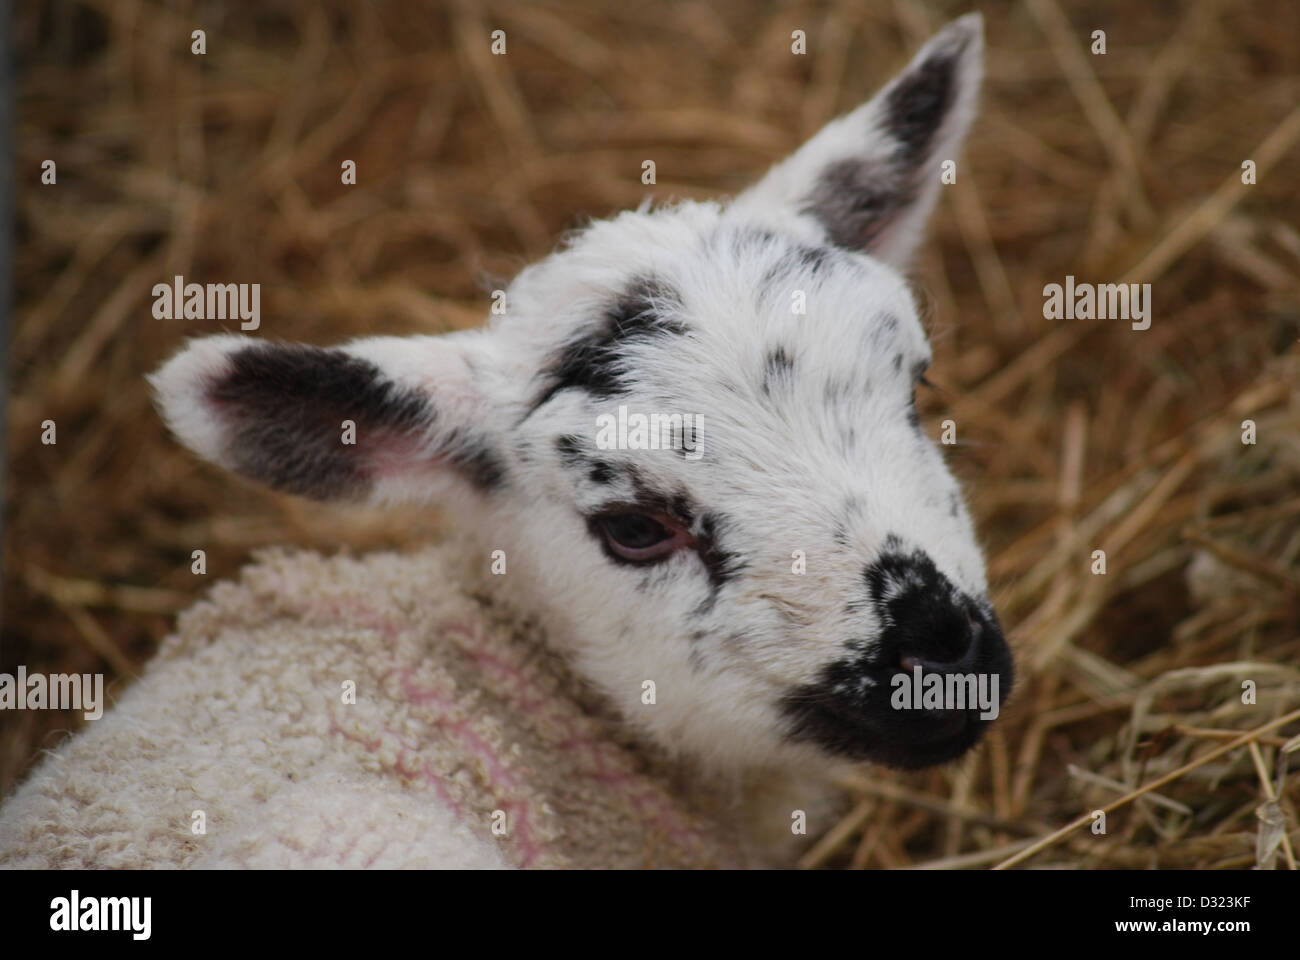 Ein Kopfschuss von einem neugeborenen Lamm auf einem Streichelzoo und Bauernhof in einen Stift von frischem Heu oder Stroh, Nahaufnahme von schwarzen und weißen Gesicht Stockfoto